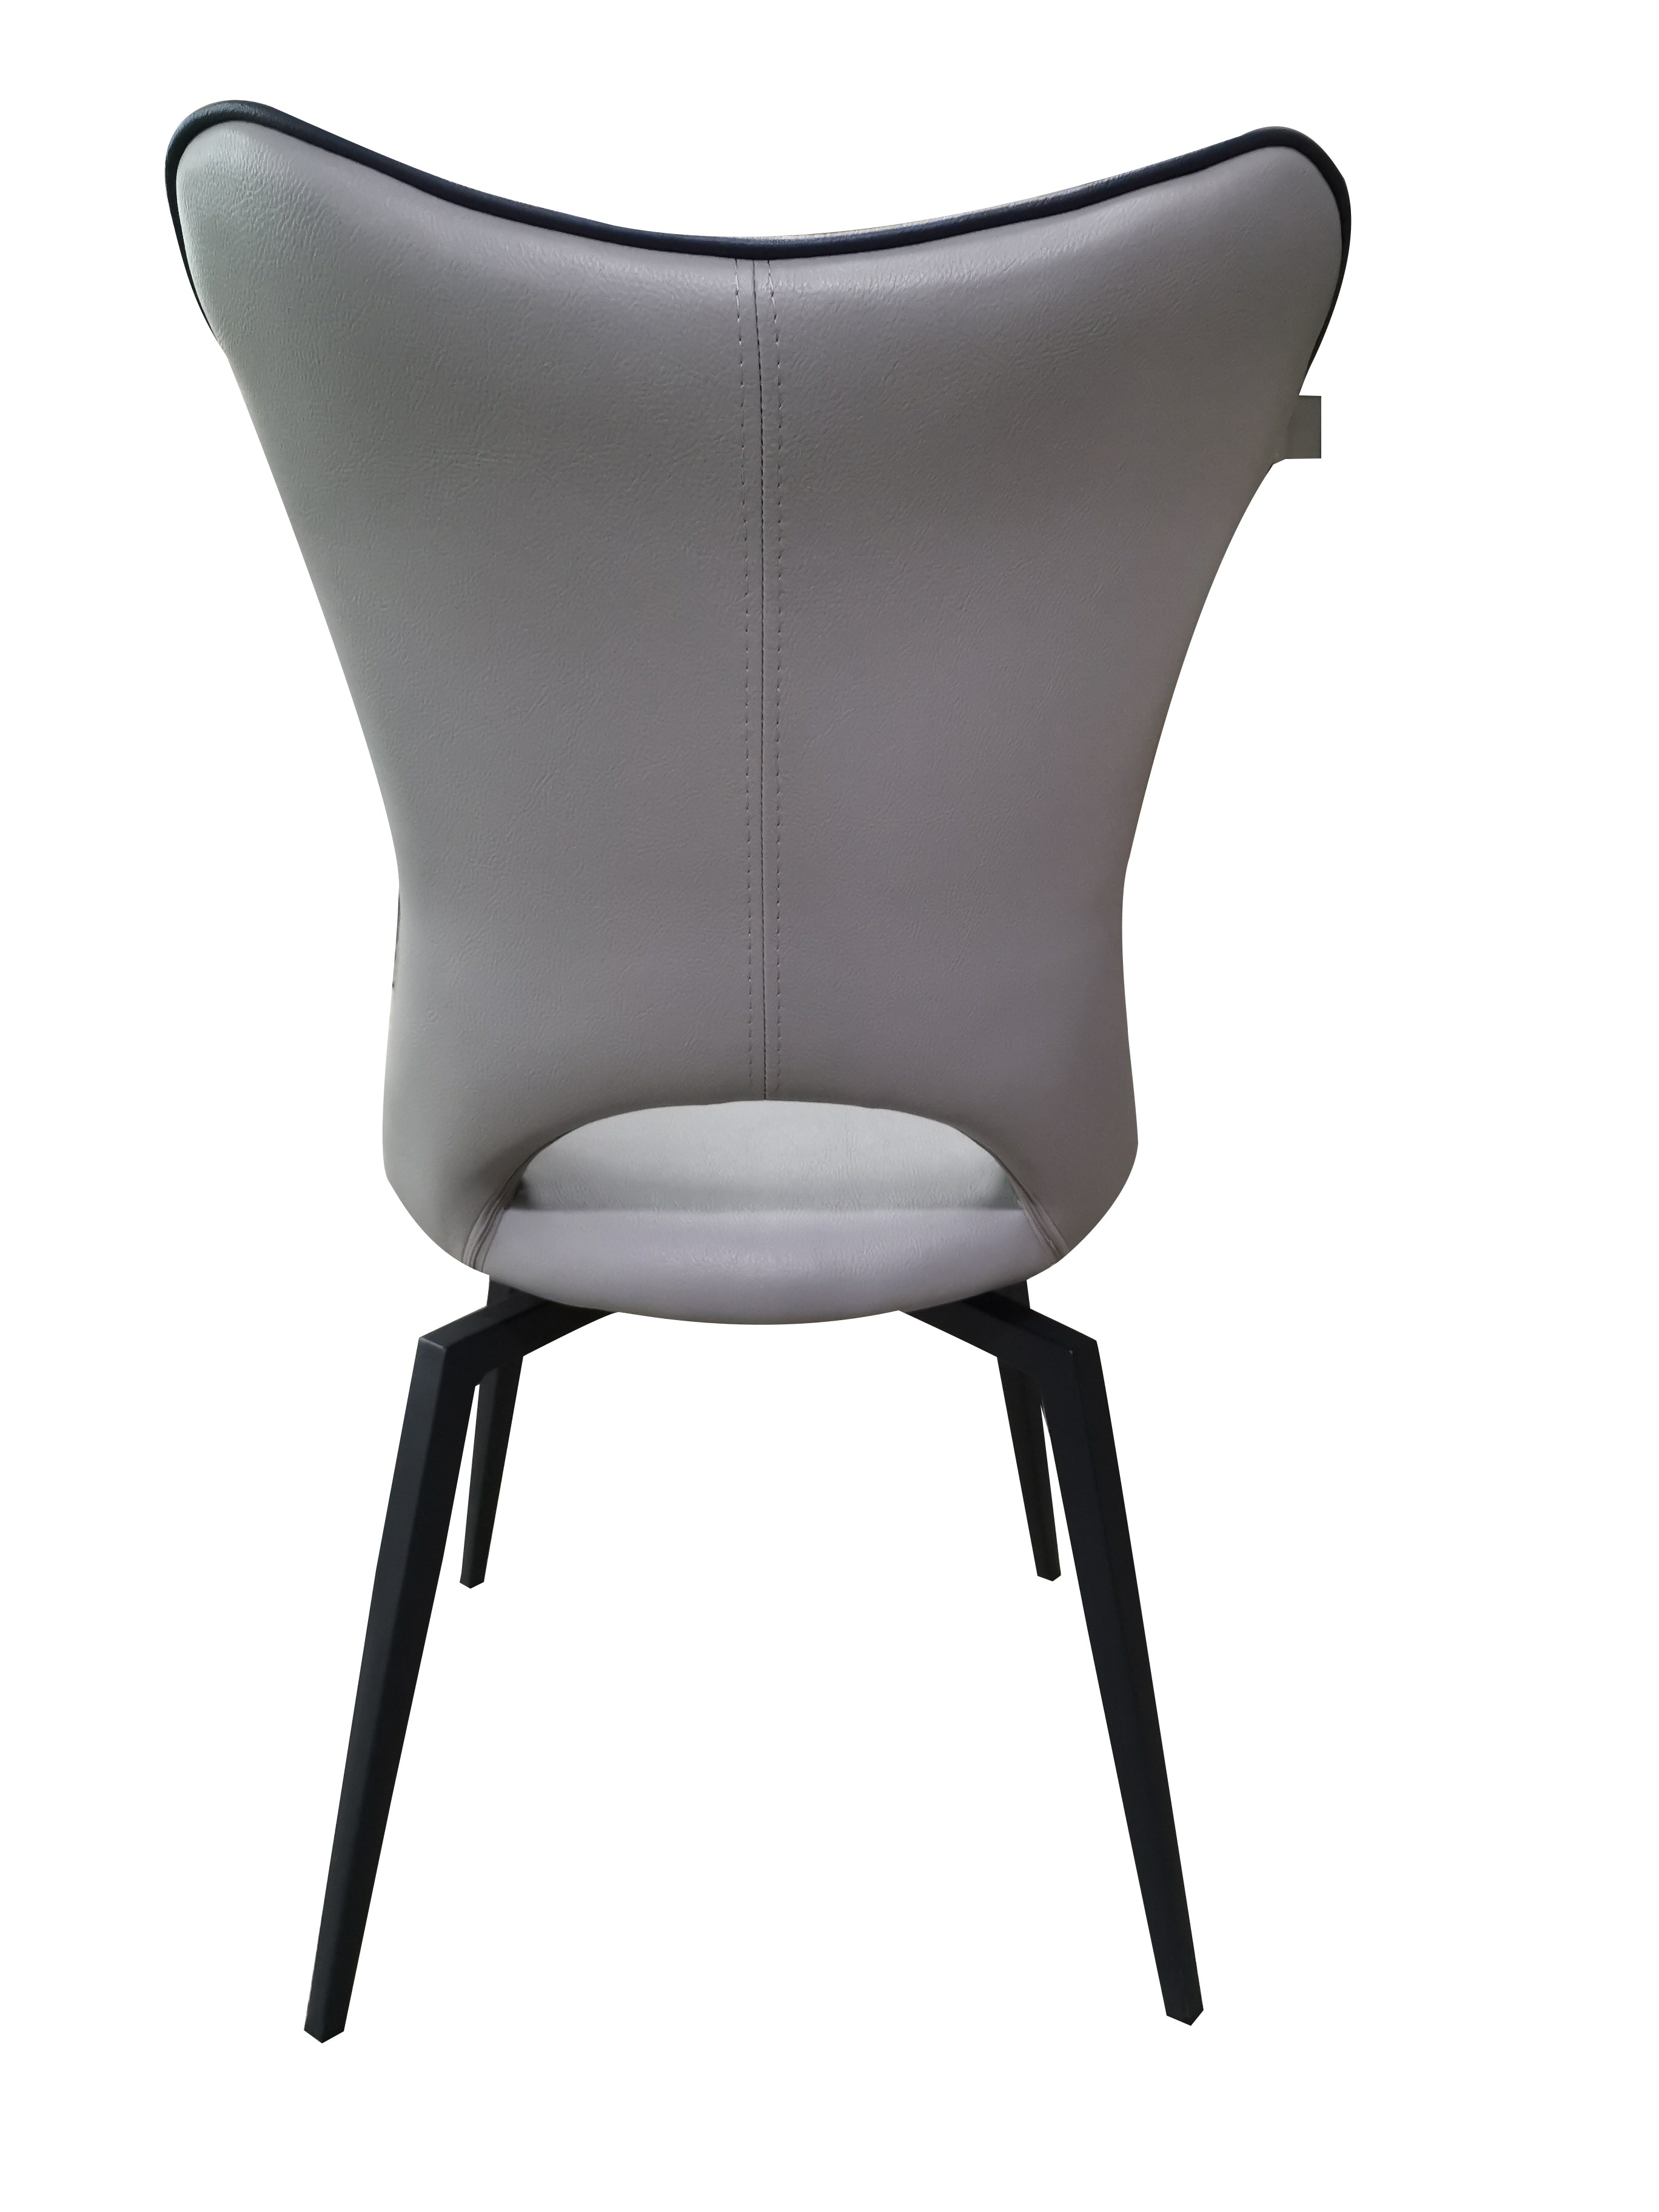 Chaise pivotante design gris clair pieds métal noir - Holga